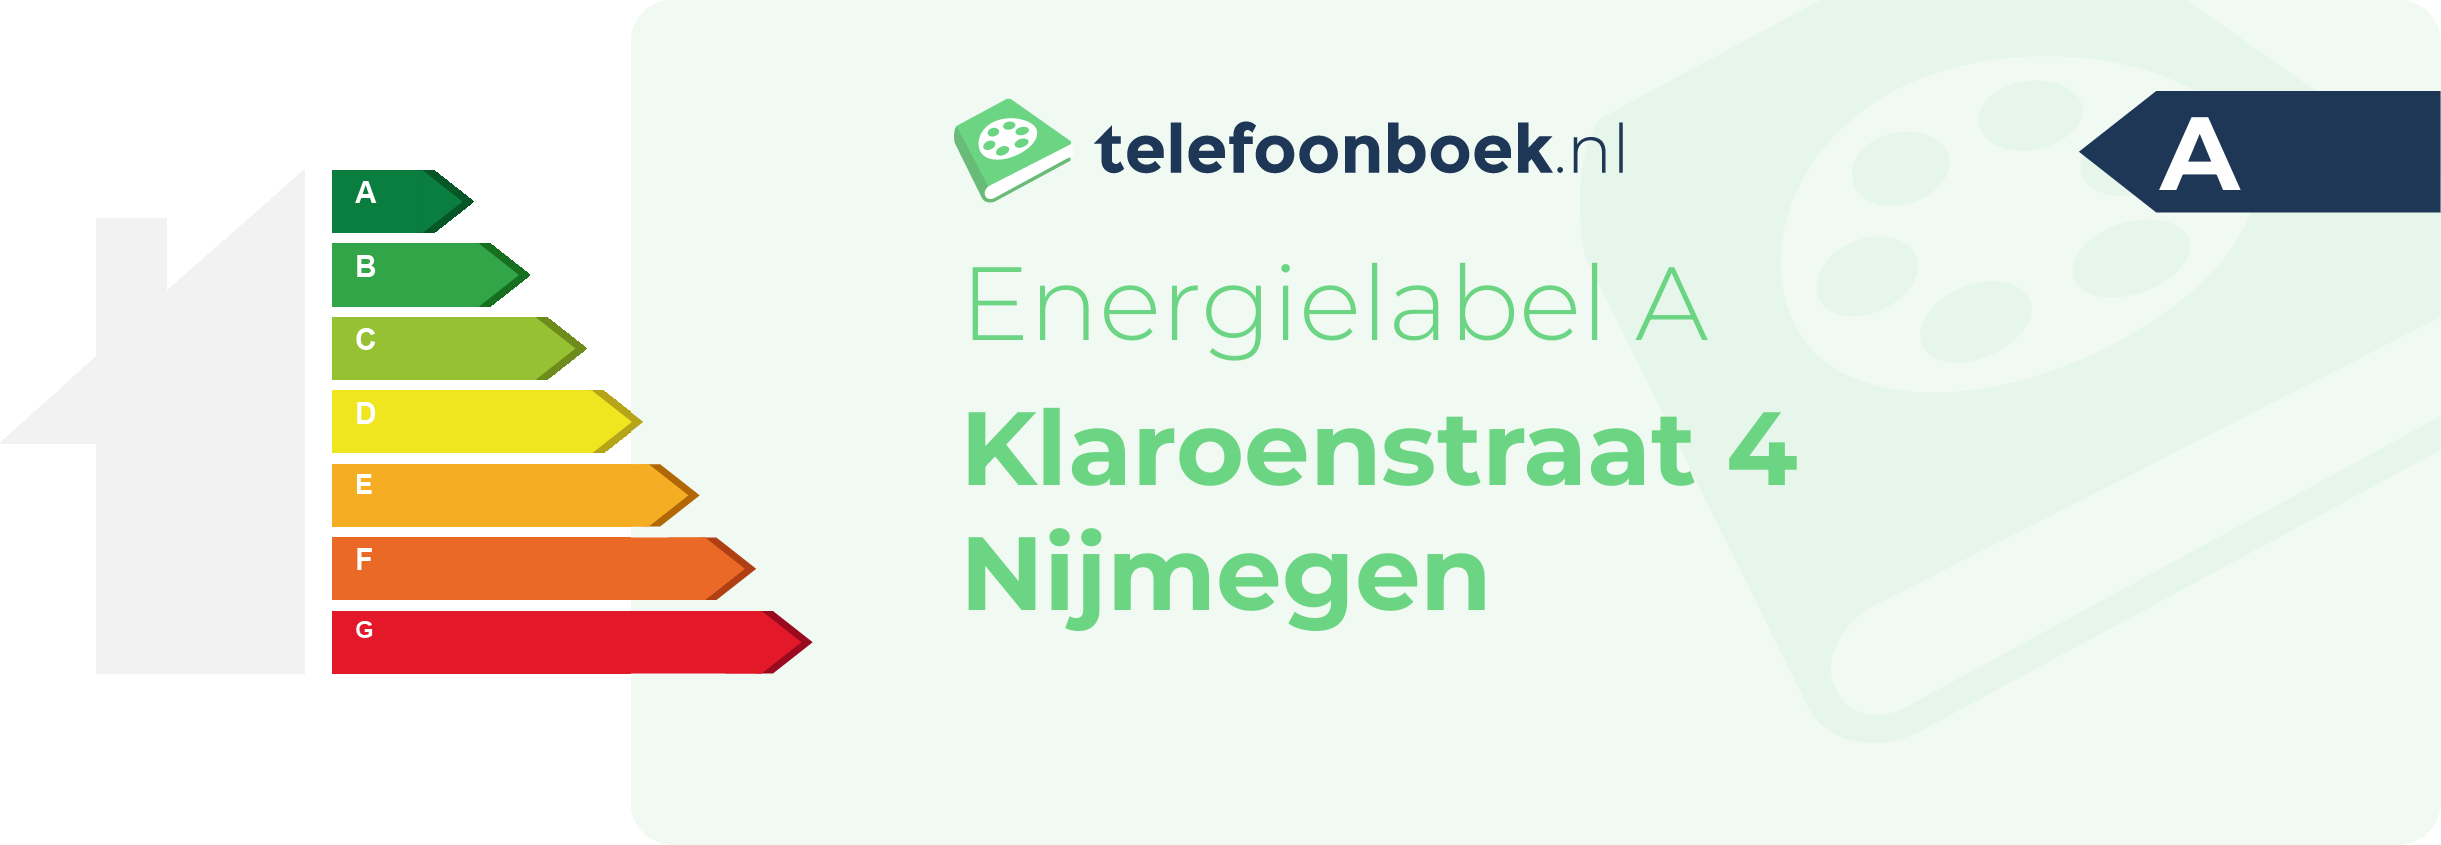 Energielabel Klaroenstraat 4 Nijmegen